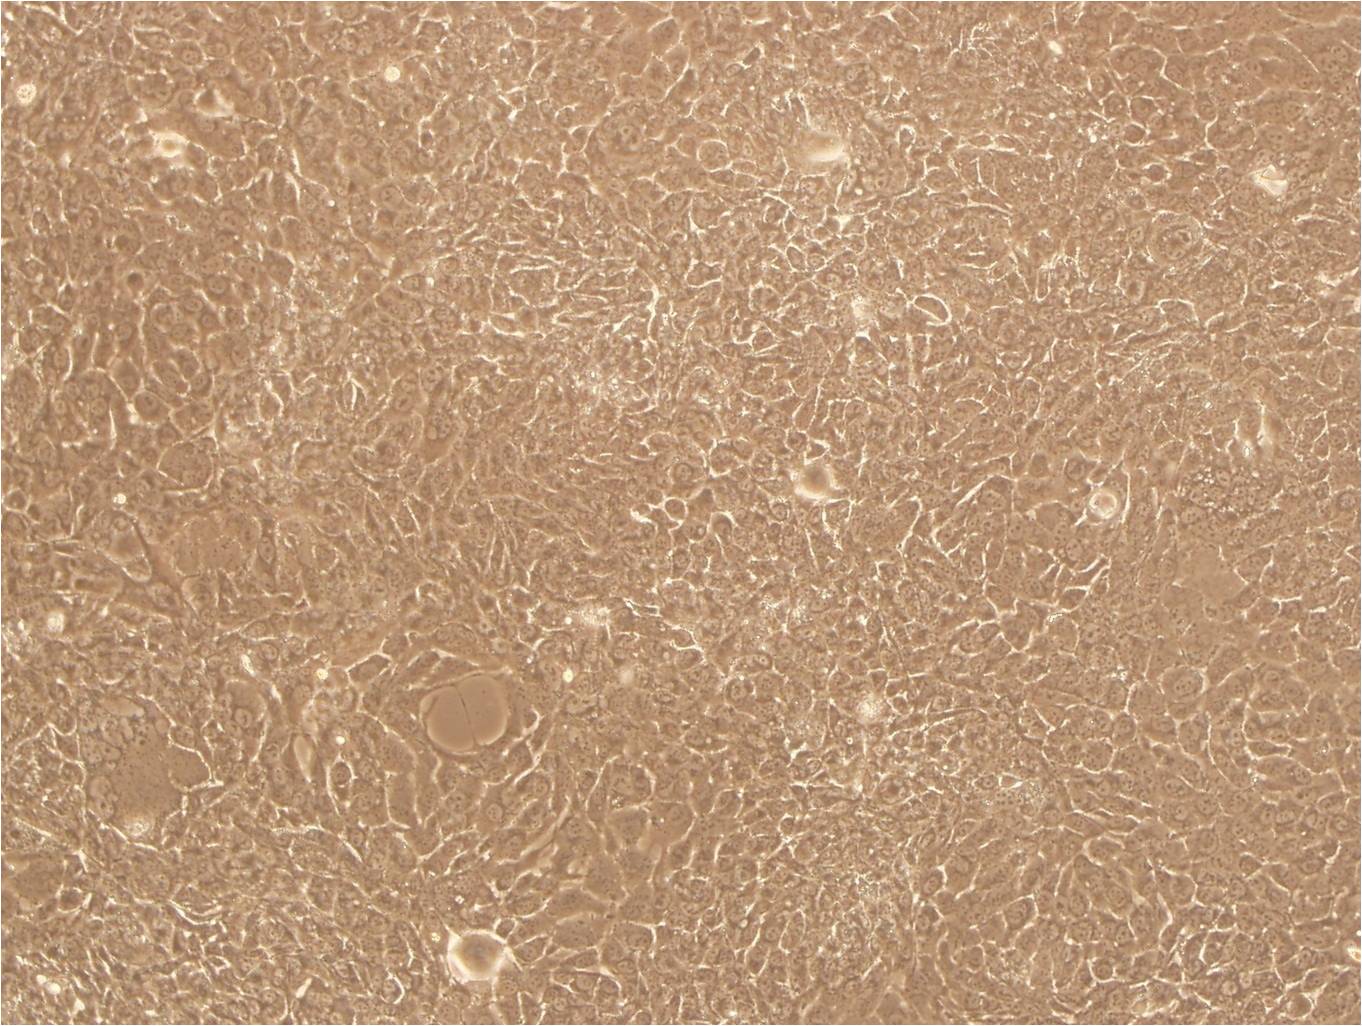 SW620 Cells|人结肠癌需消化细胞系